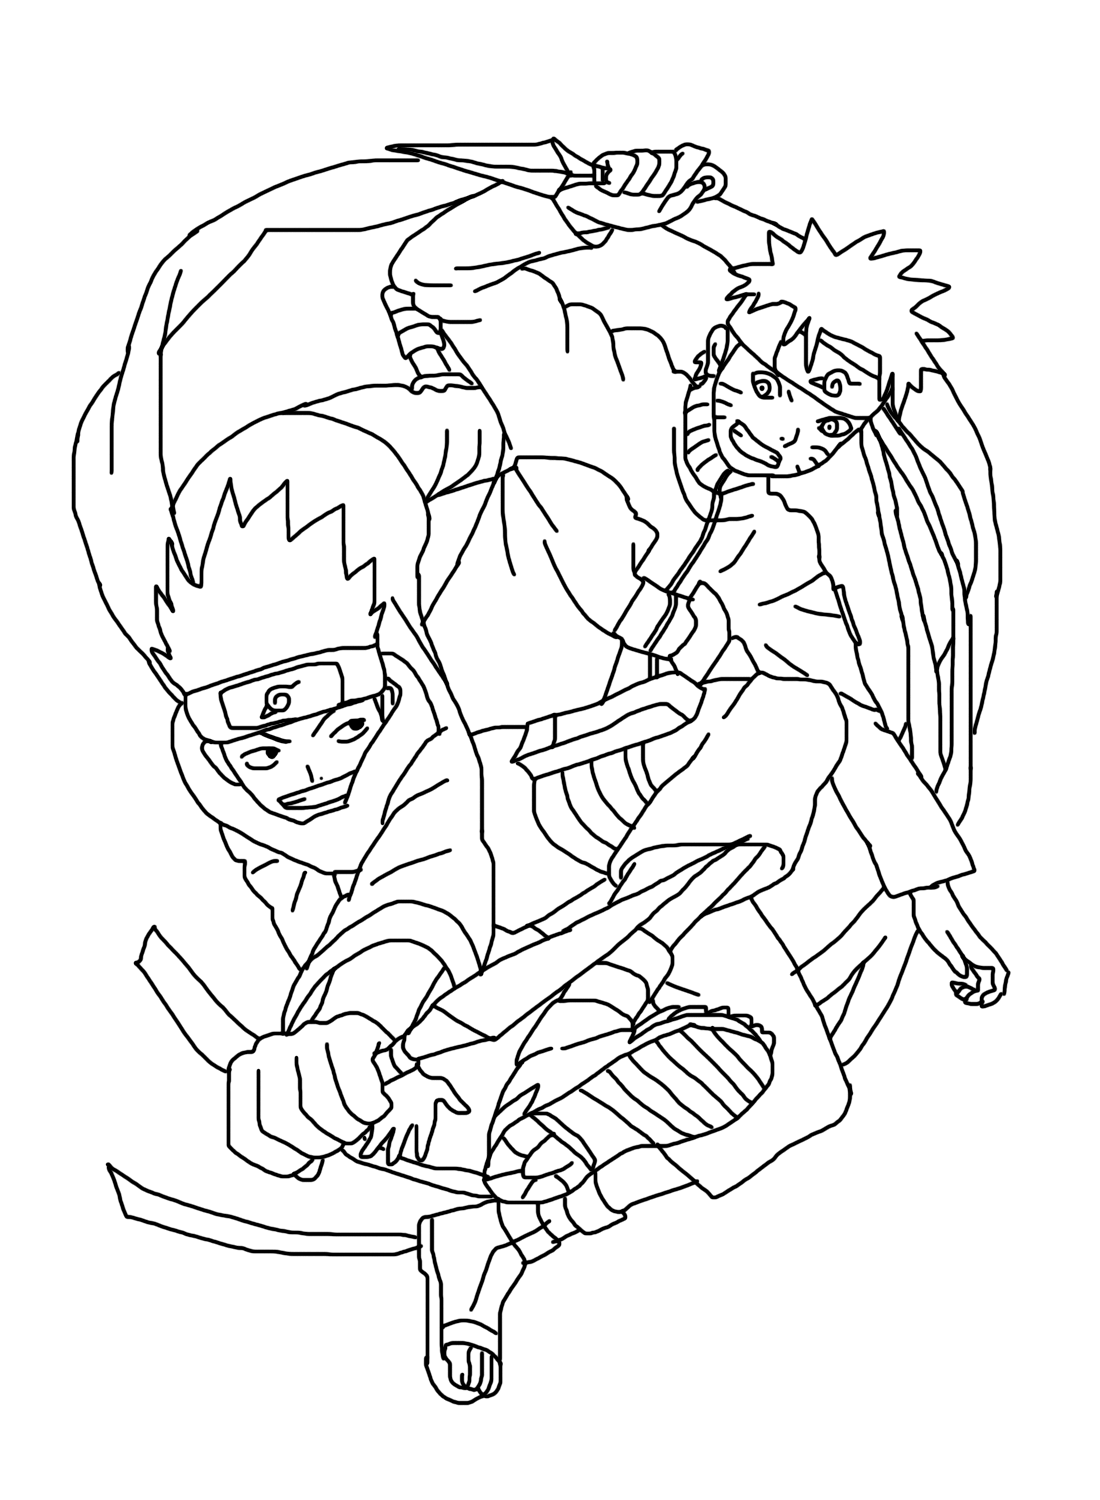 Konohamaru with Naruto Coloring Page Free from Sarutobi Konohamaru